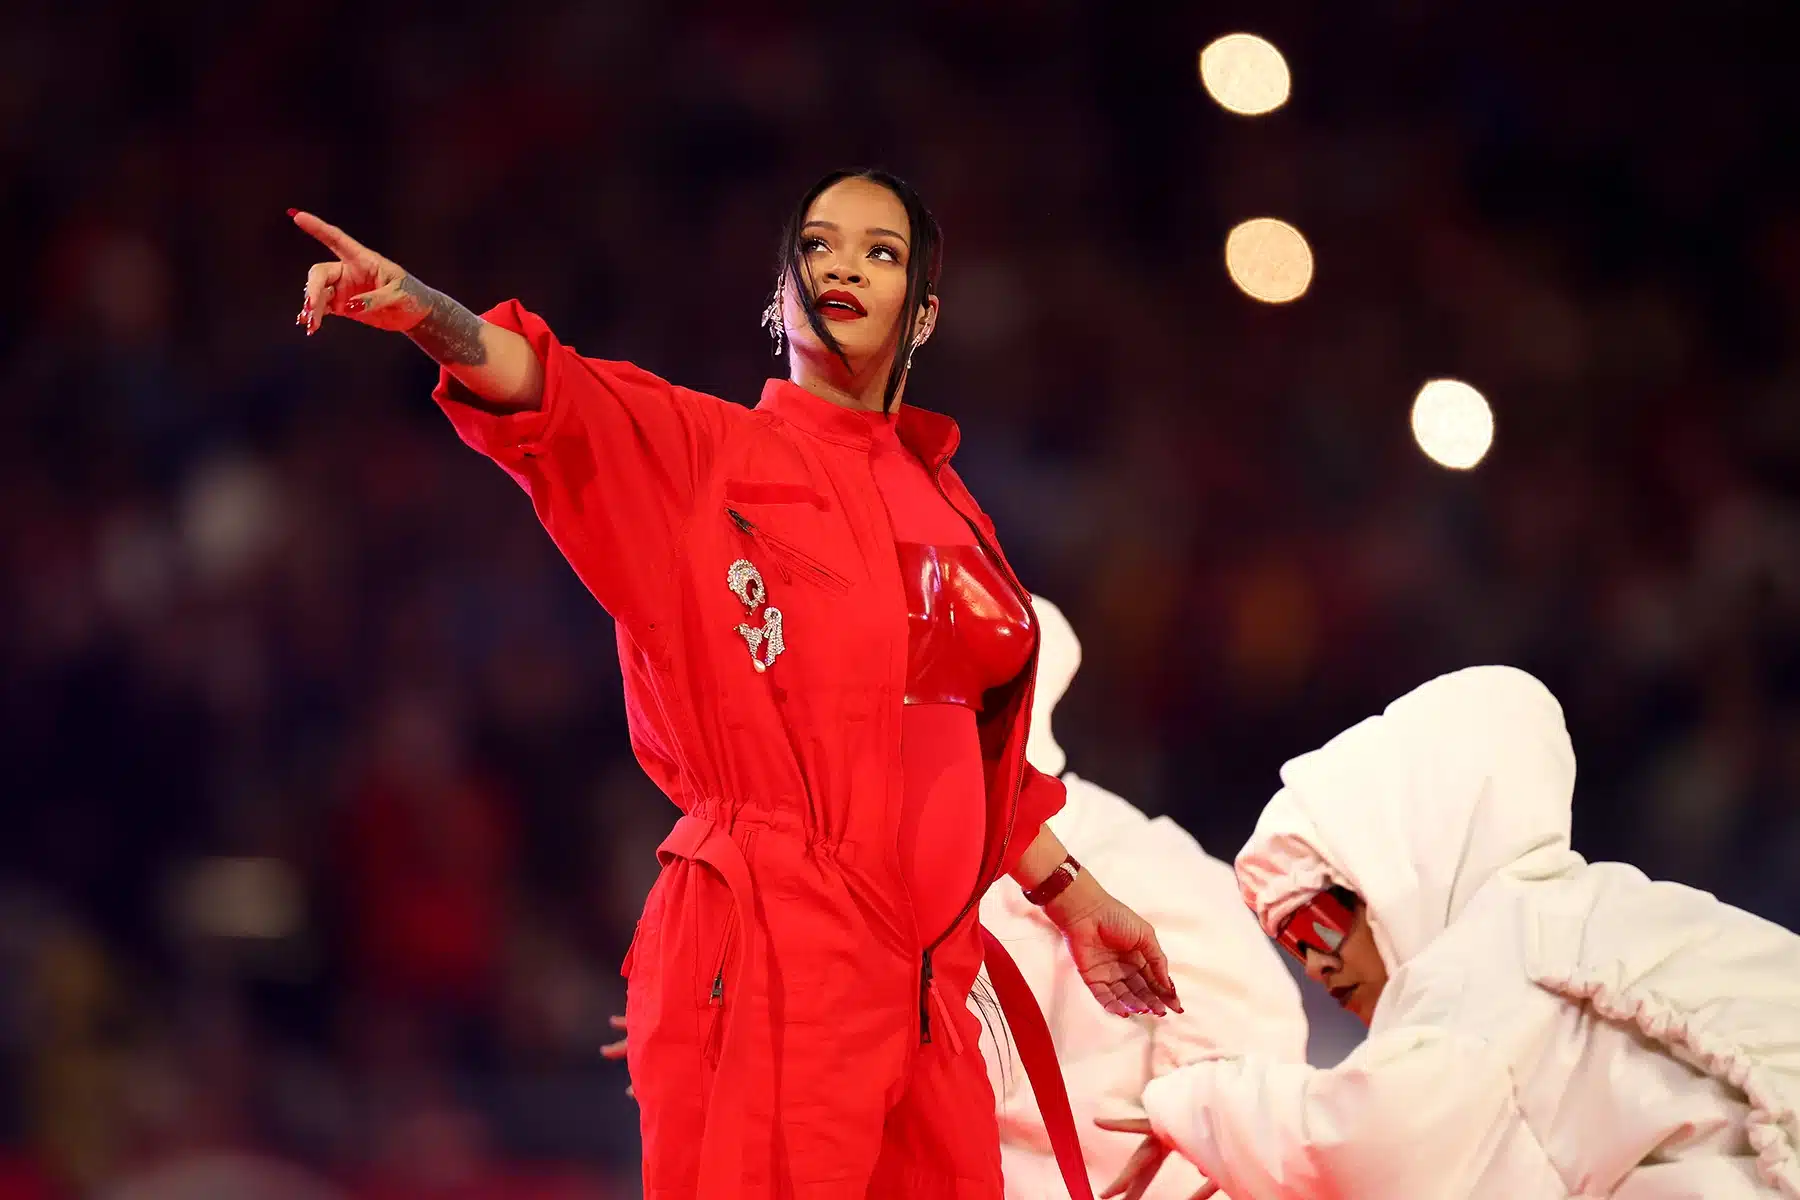 Presentación De Rihanna Cantando En El Super Bowl